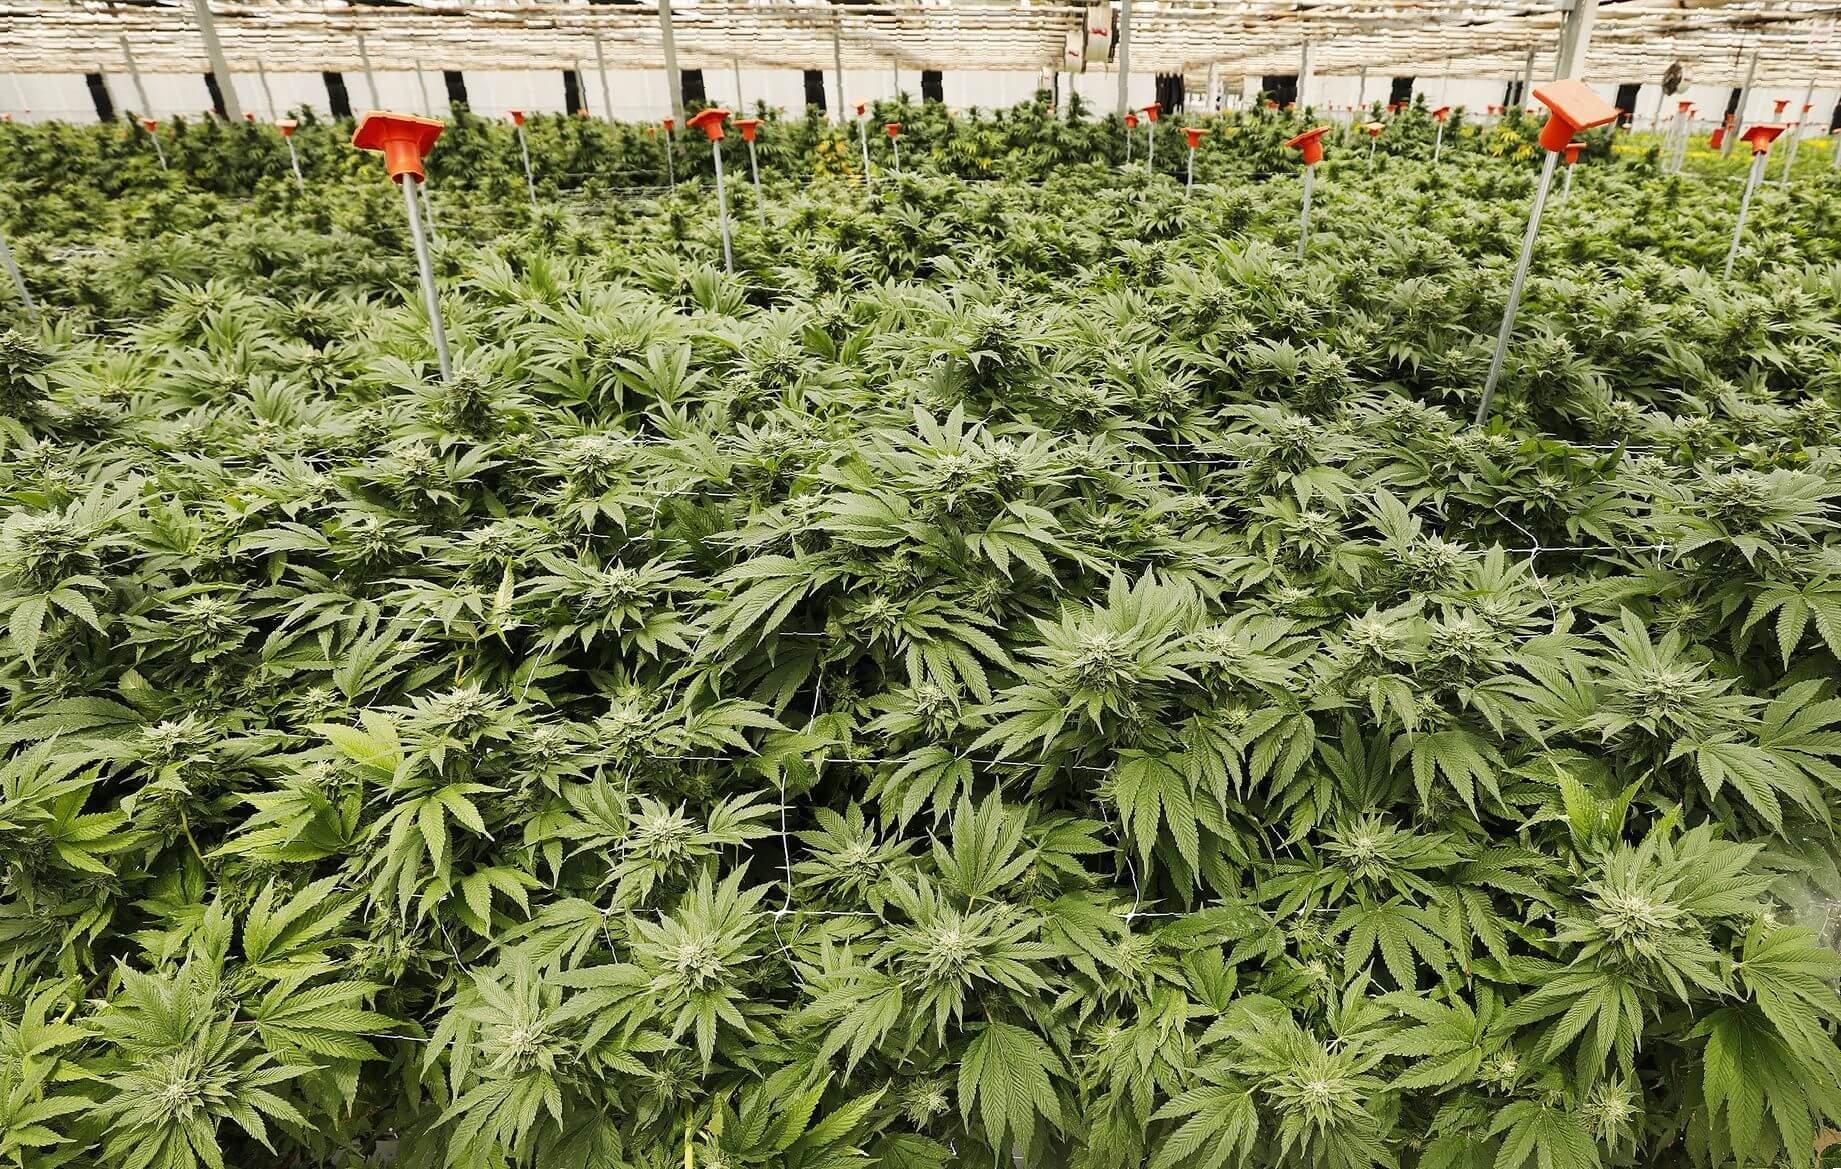 выращивание марихуаны легально ли это